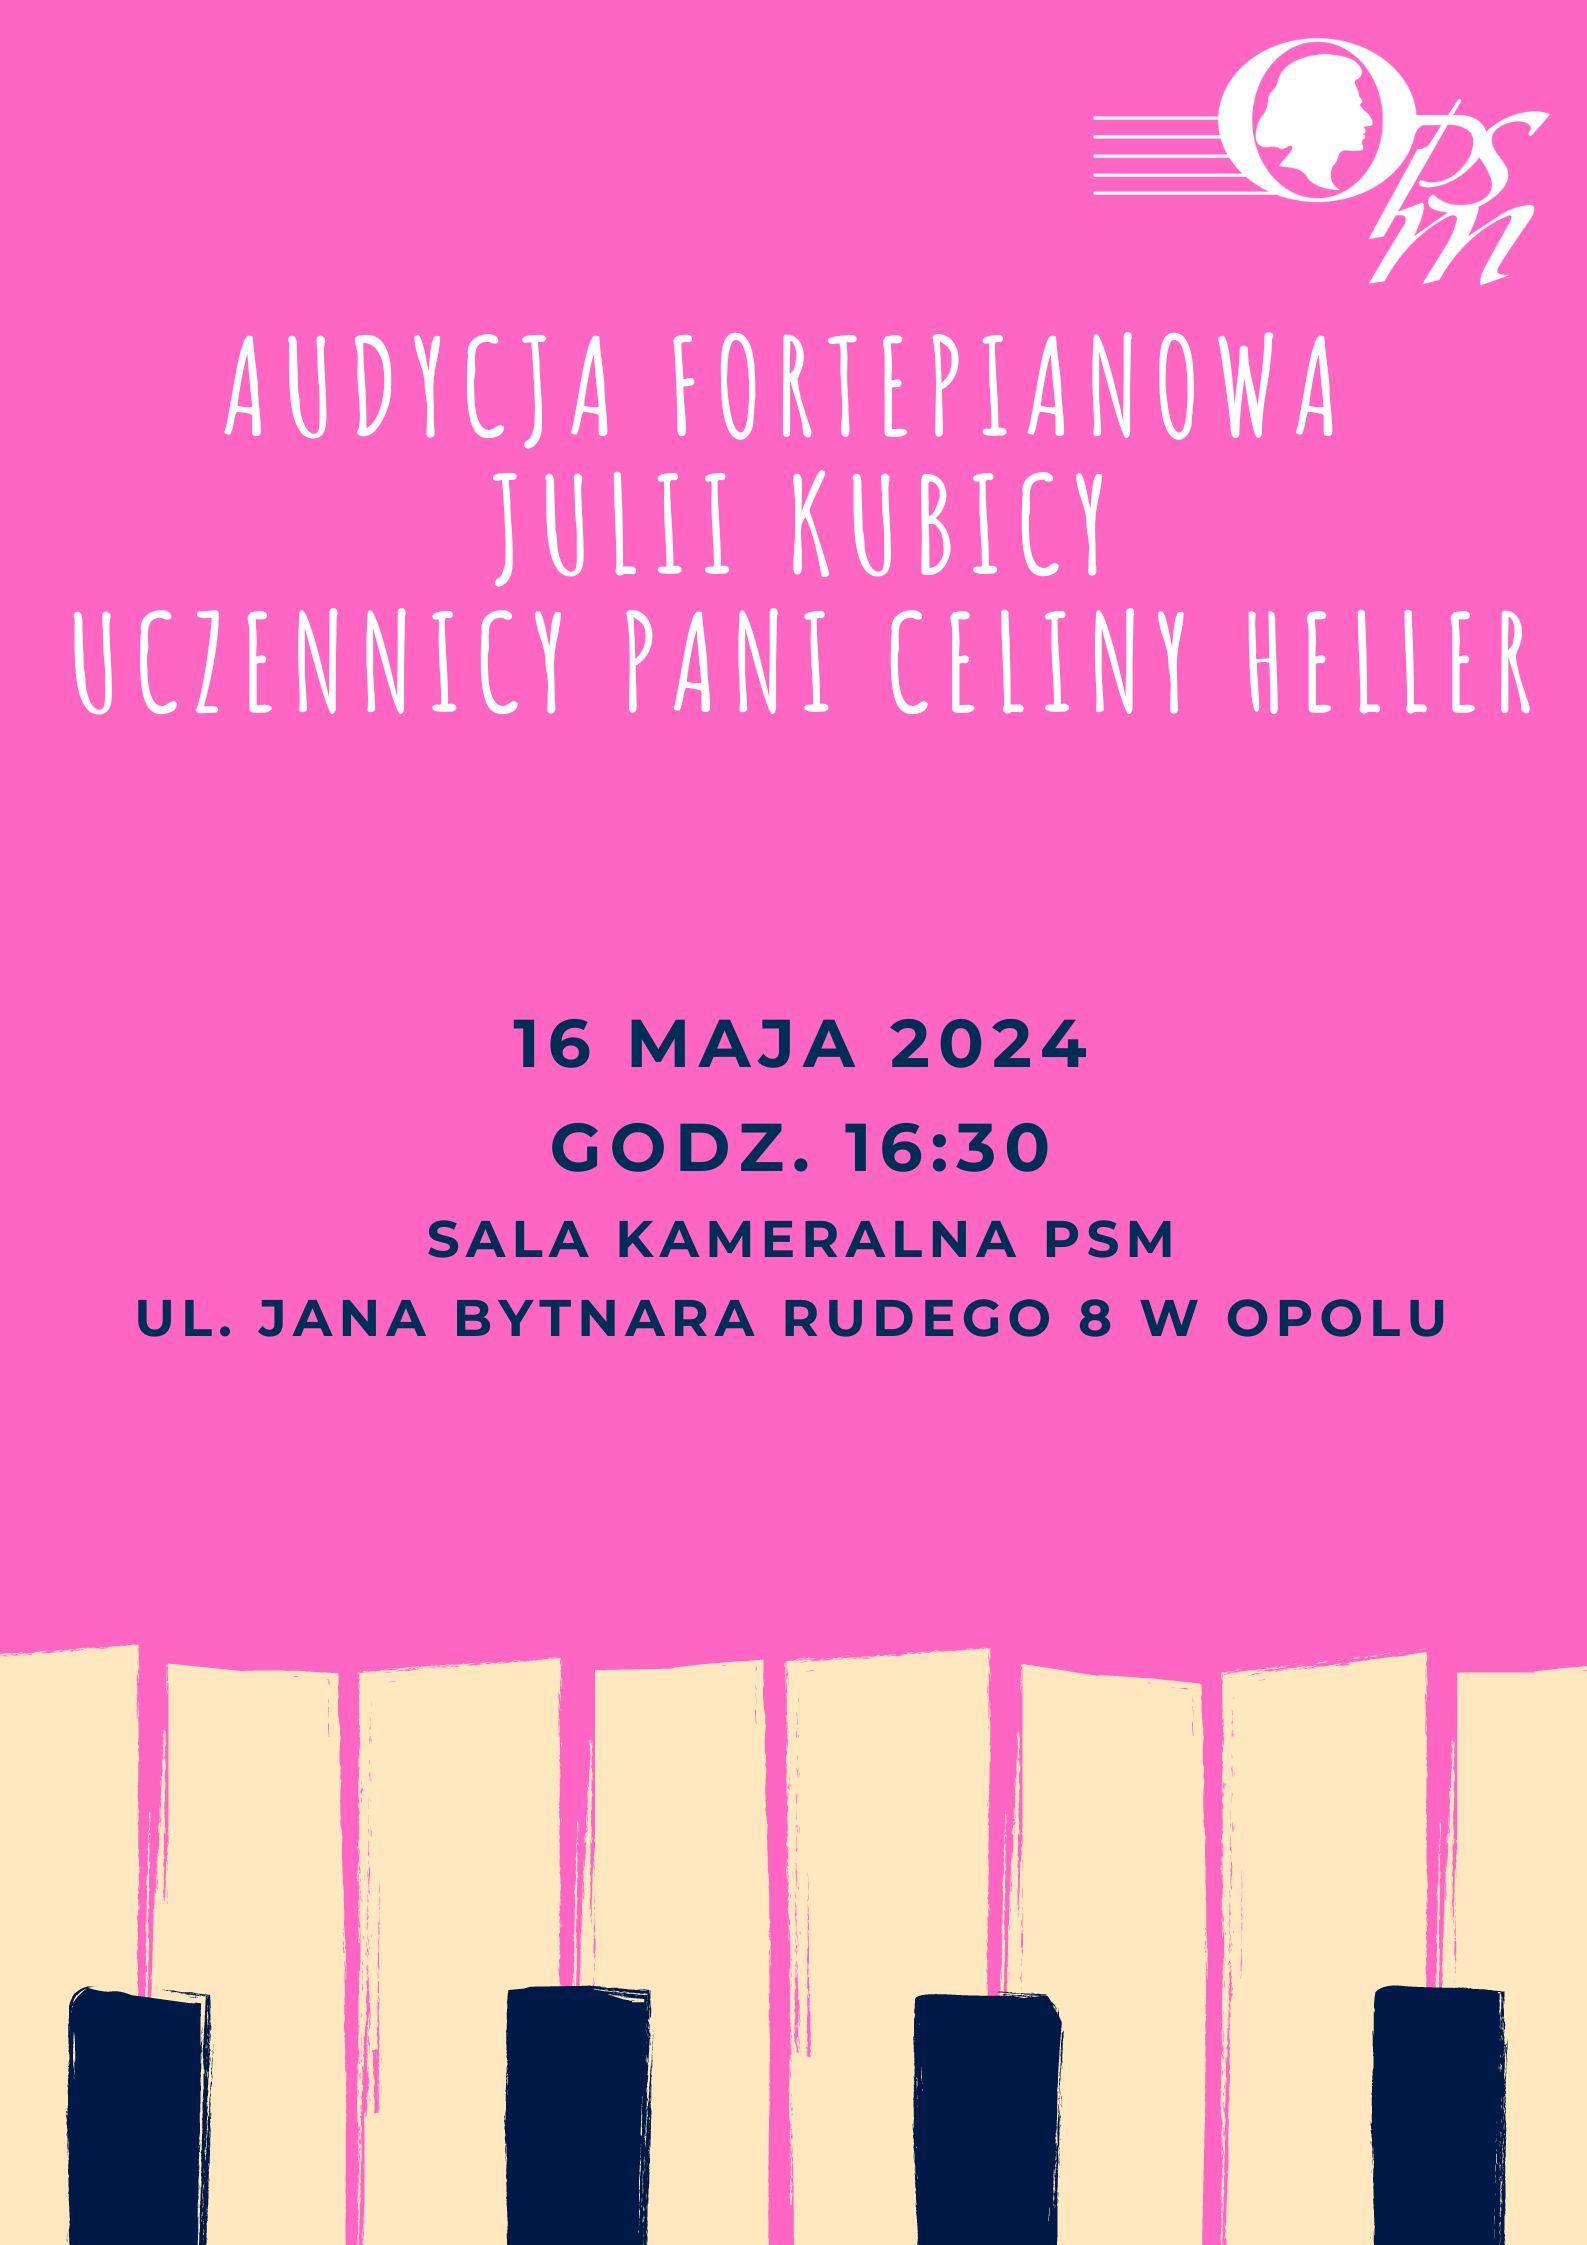 Audycja fortepianowa Julii Kubicy